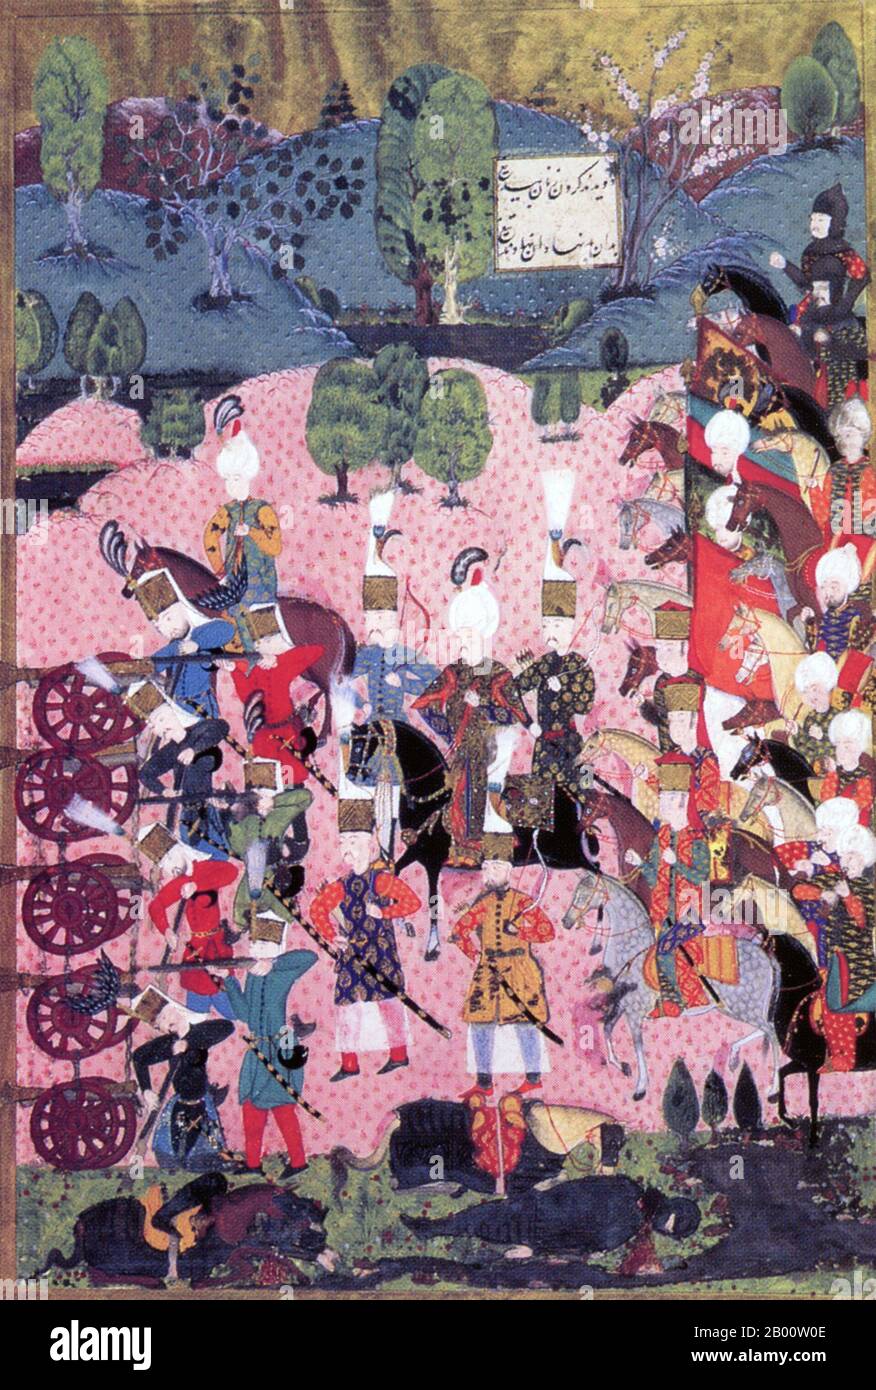 Türkei/Ungarn: 'Die Schlacht von Mohacs', ein Gemälde aus der illustrierten Handschrift 'Suleymanname' von Arif Celebi, datiert 1558. Die Schlacht von Mohács wurde am 29. August 1526 in der Nähe von Mohács in Ungarn ausgetragen. Die Streitkräfte von König Ludwig II. Von Ungarn und Böhmen wurden von der osmanischen Armee unter der Führung von Sultan Suleyman dem Magnificent besiegt. Der osmanische Sieg markierte das Ende der Jagiellon-Dynastie in Ungarn, die über mehrere Jahrhunderte zwischen dem Osmanischen Reich, der Habsburger Monarchie und dem Fürstentum Siebenbürgen aufgeteilt wurde. Stockfoto